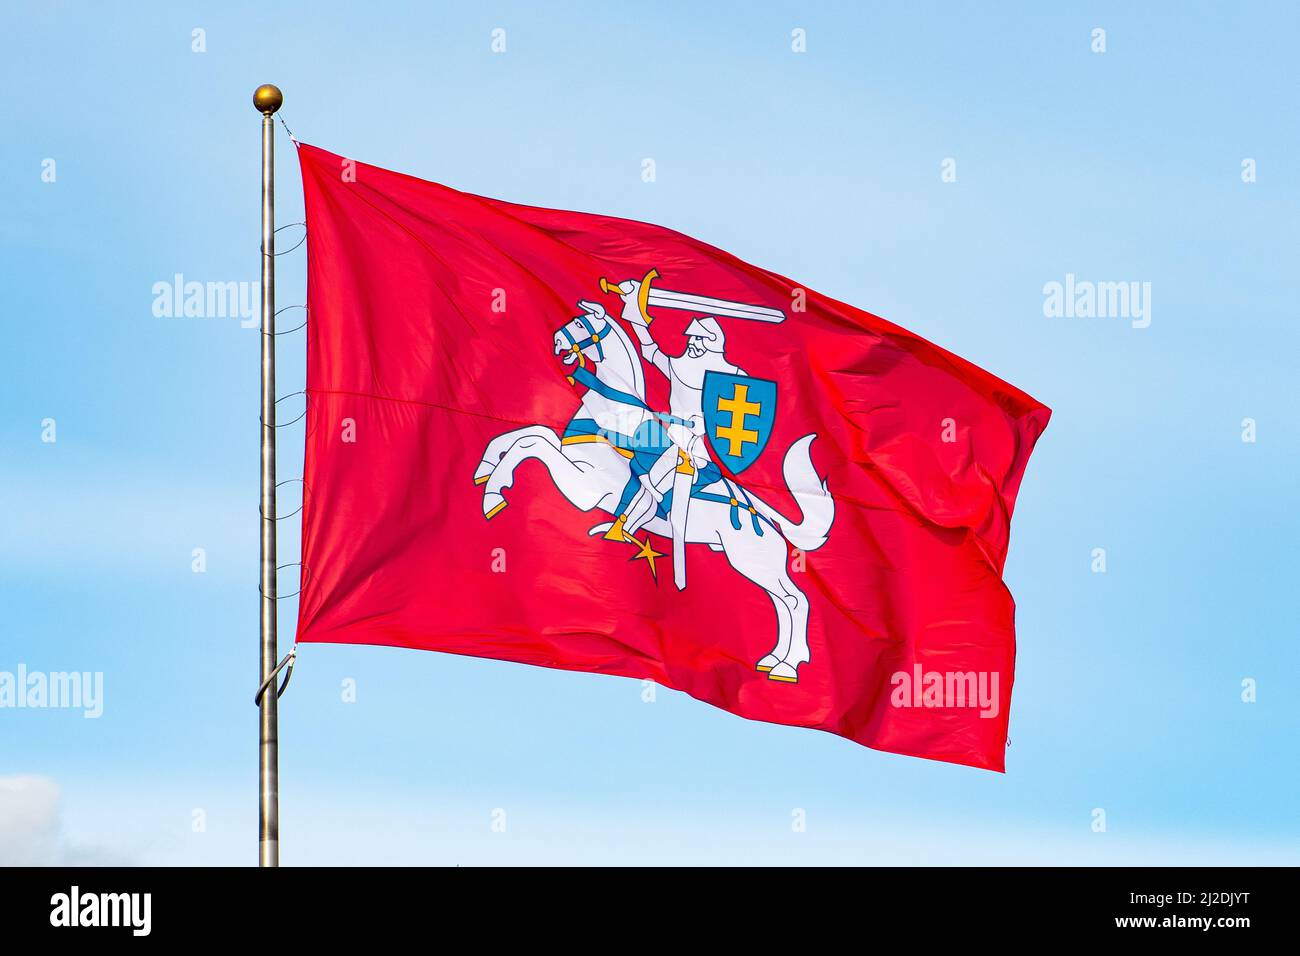 Storico lituano bandiera, stemma di Lituania, costituito da un cavaliere rivestito di armatura a cavallo con una spada e scudo, Vytis Foto Stock